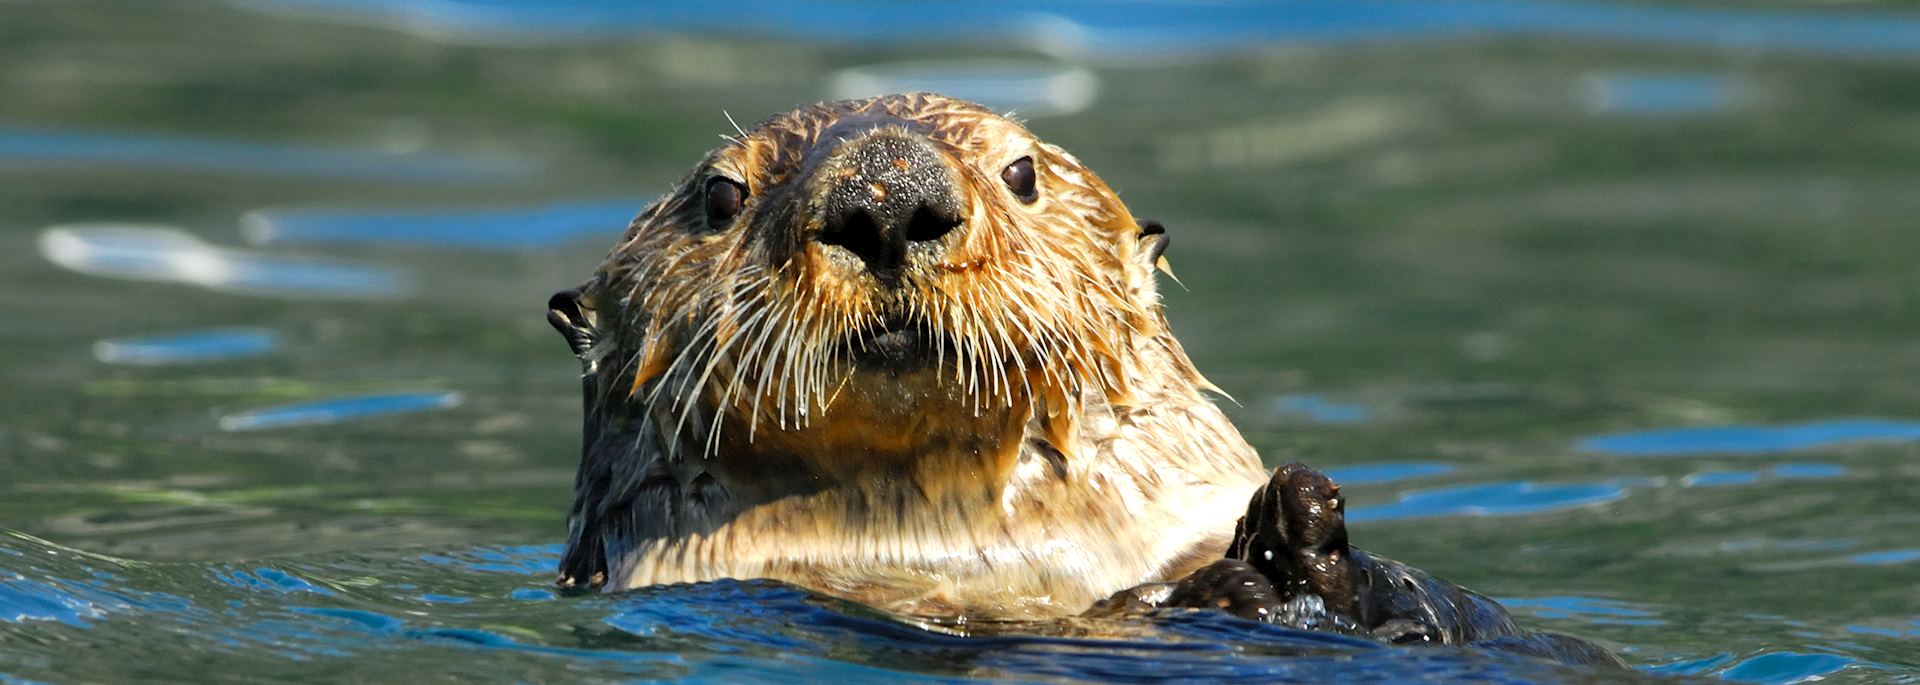 Sea otter, Kenai Peninsula